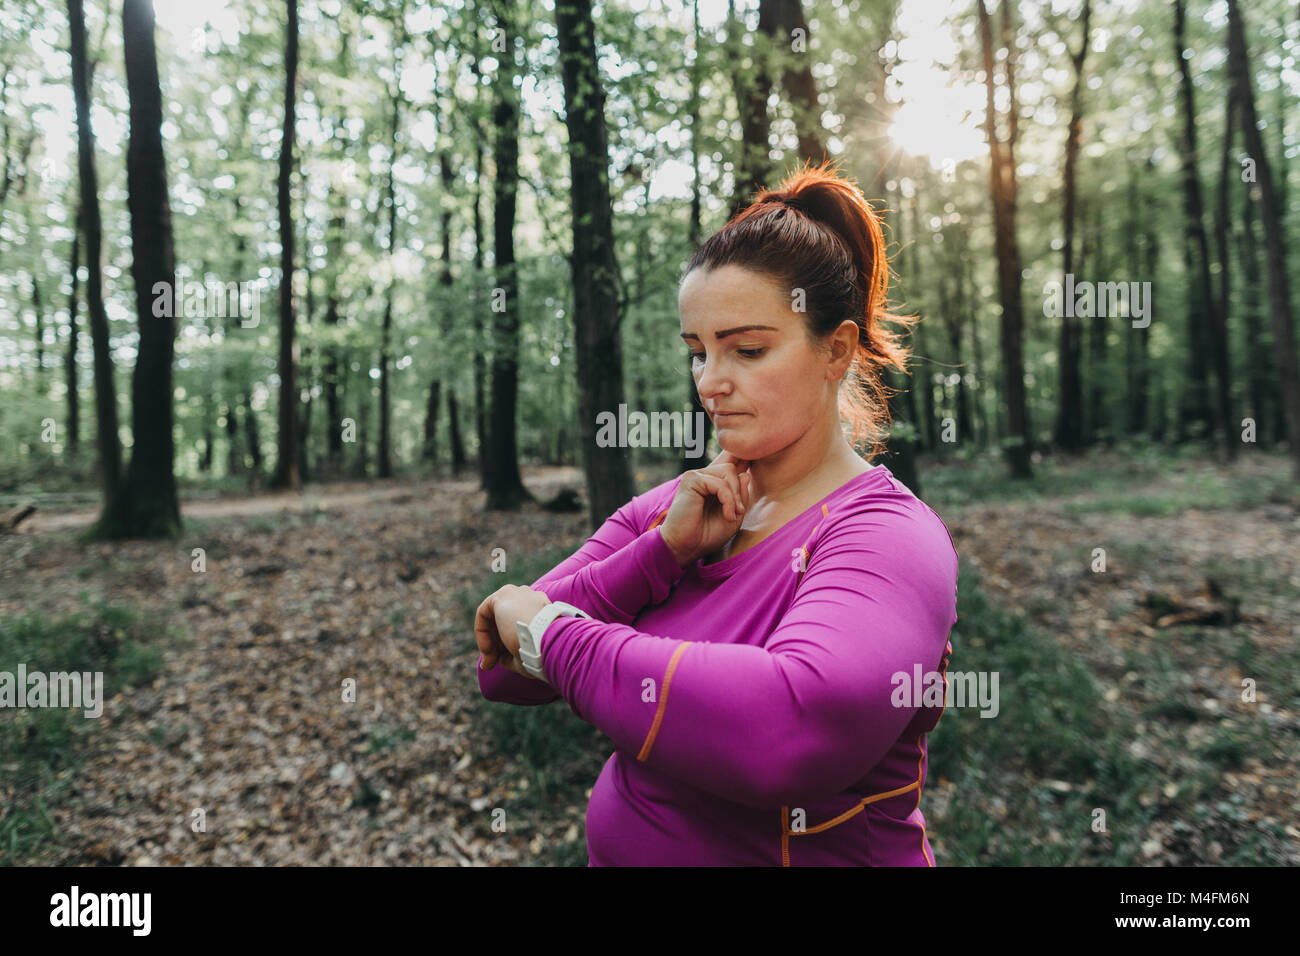 Porträt einer plus Größe weibliche Jogger ihr Puls Messung nach einem Jog in einem Park. Stockfoto